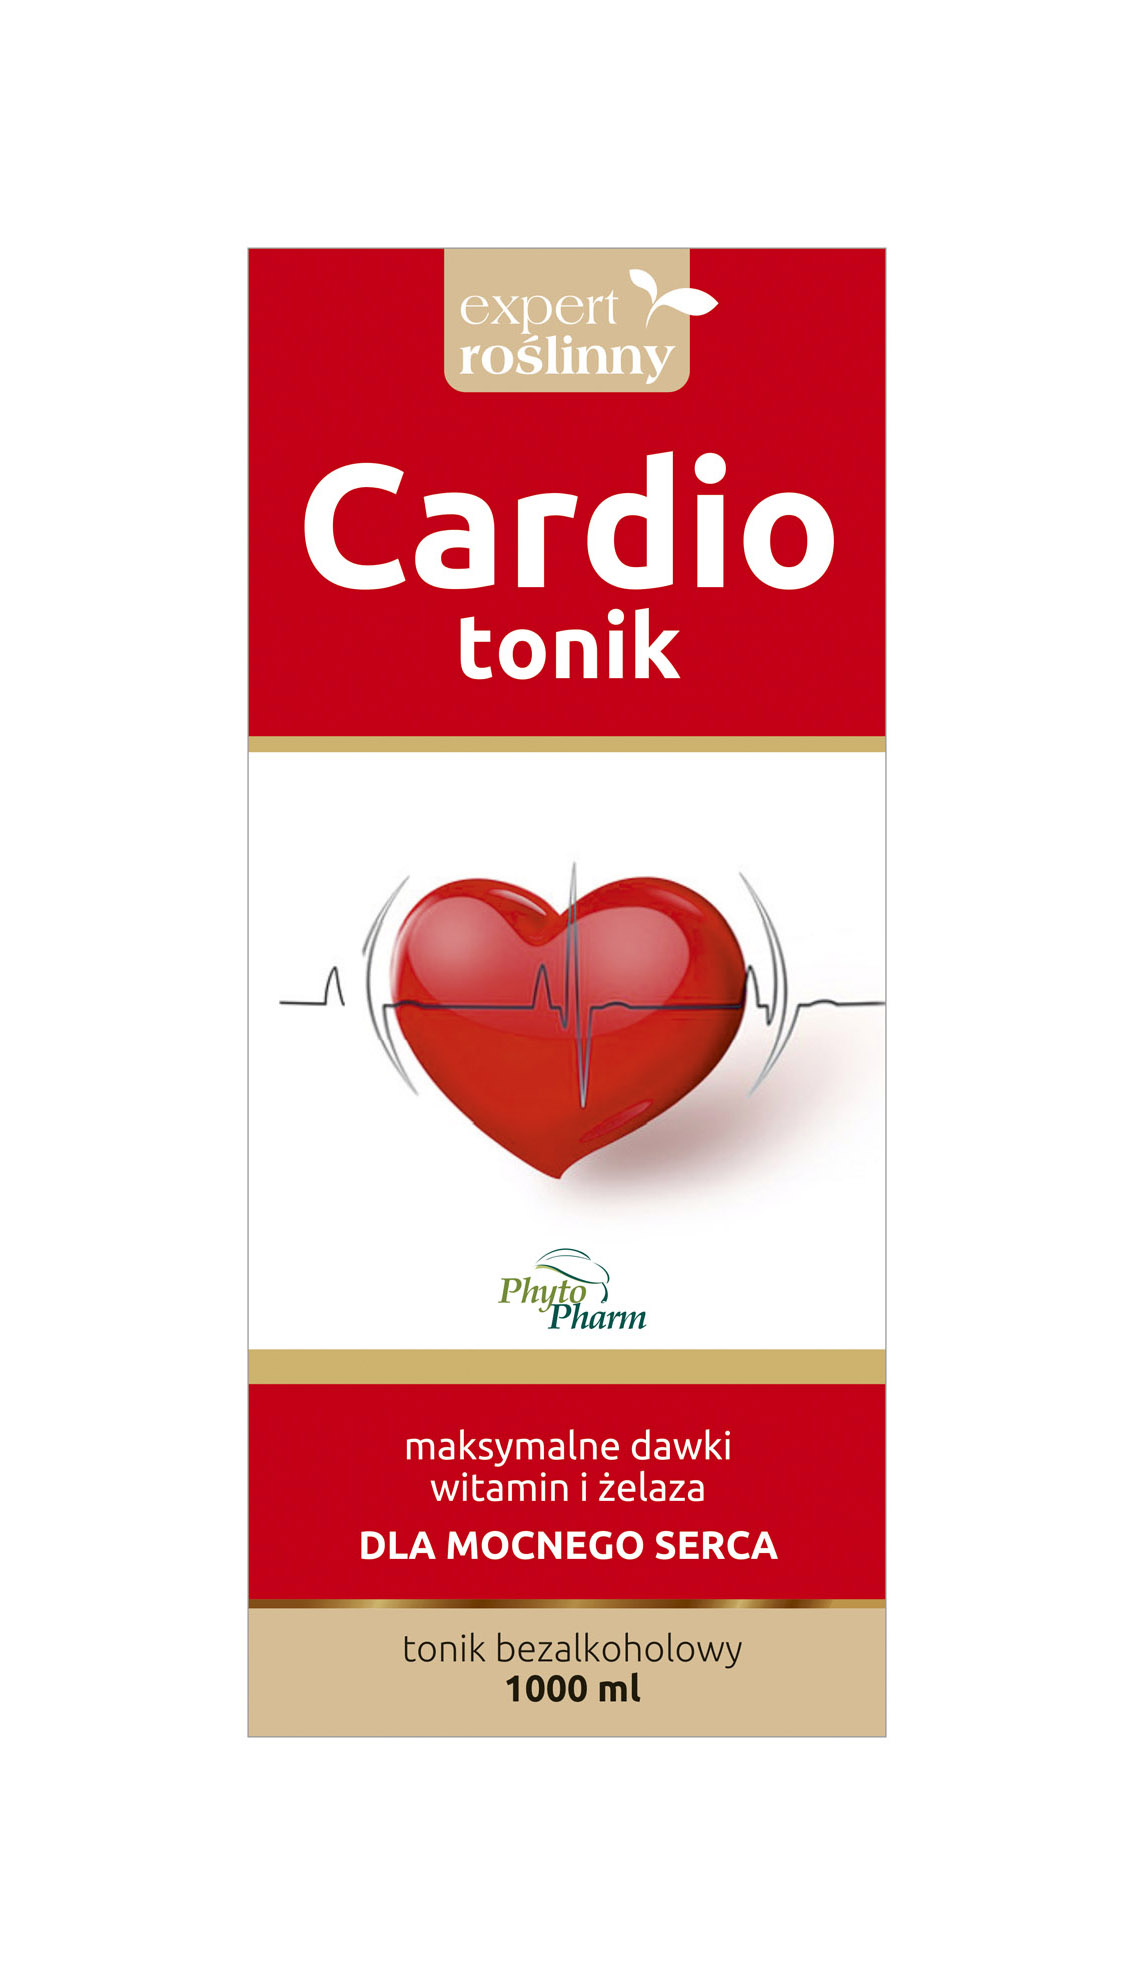 Cardio_tonik_v03C.jpg